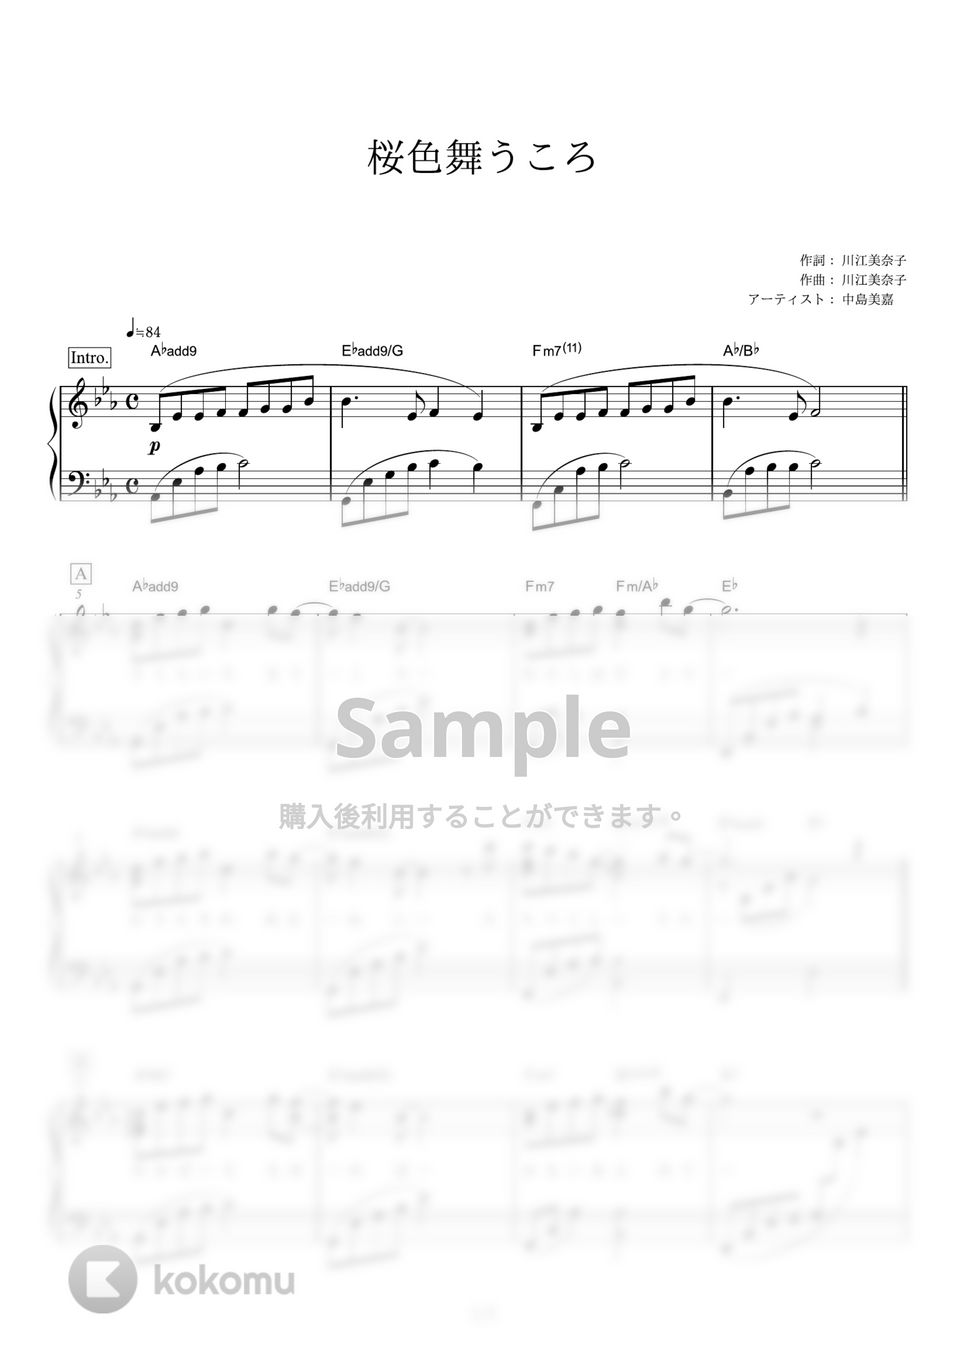 中島美嘉 - 桜色舞うころ (「かんぽ生命」CMソング) by ピアノの本棚